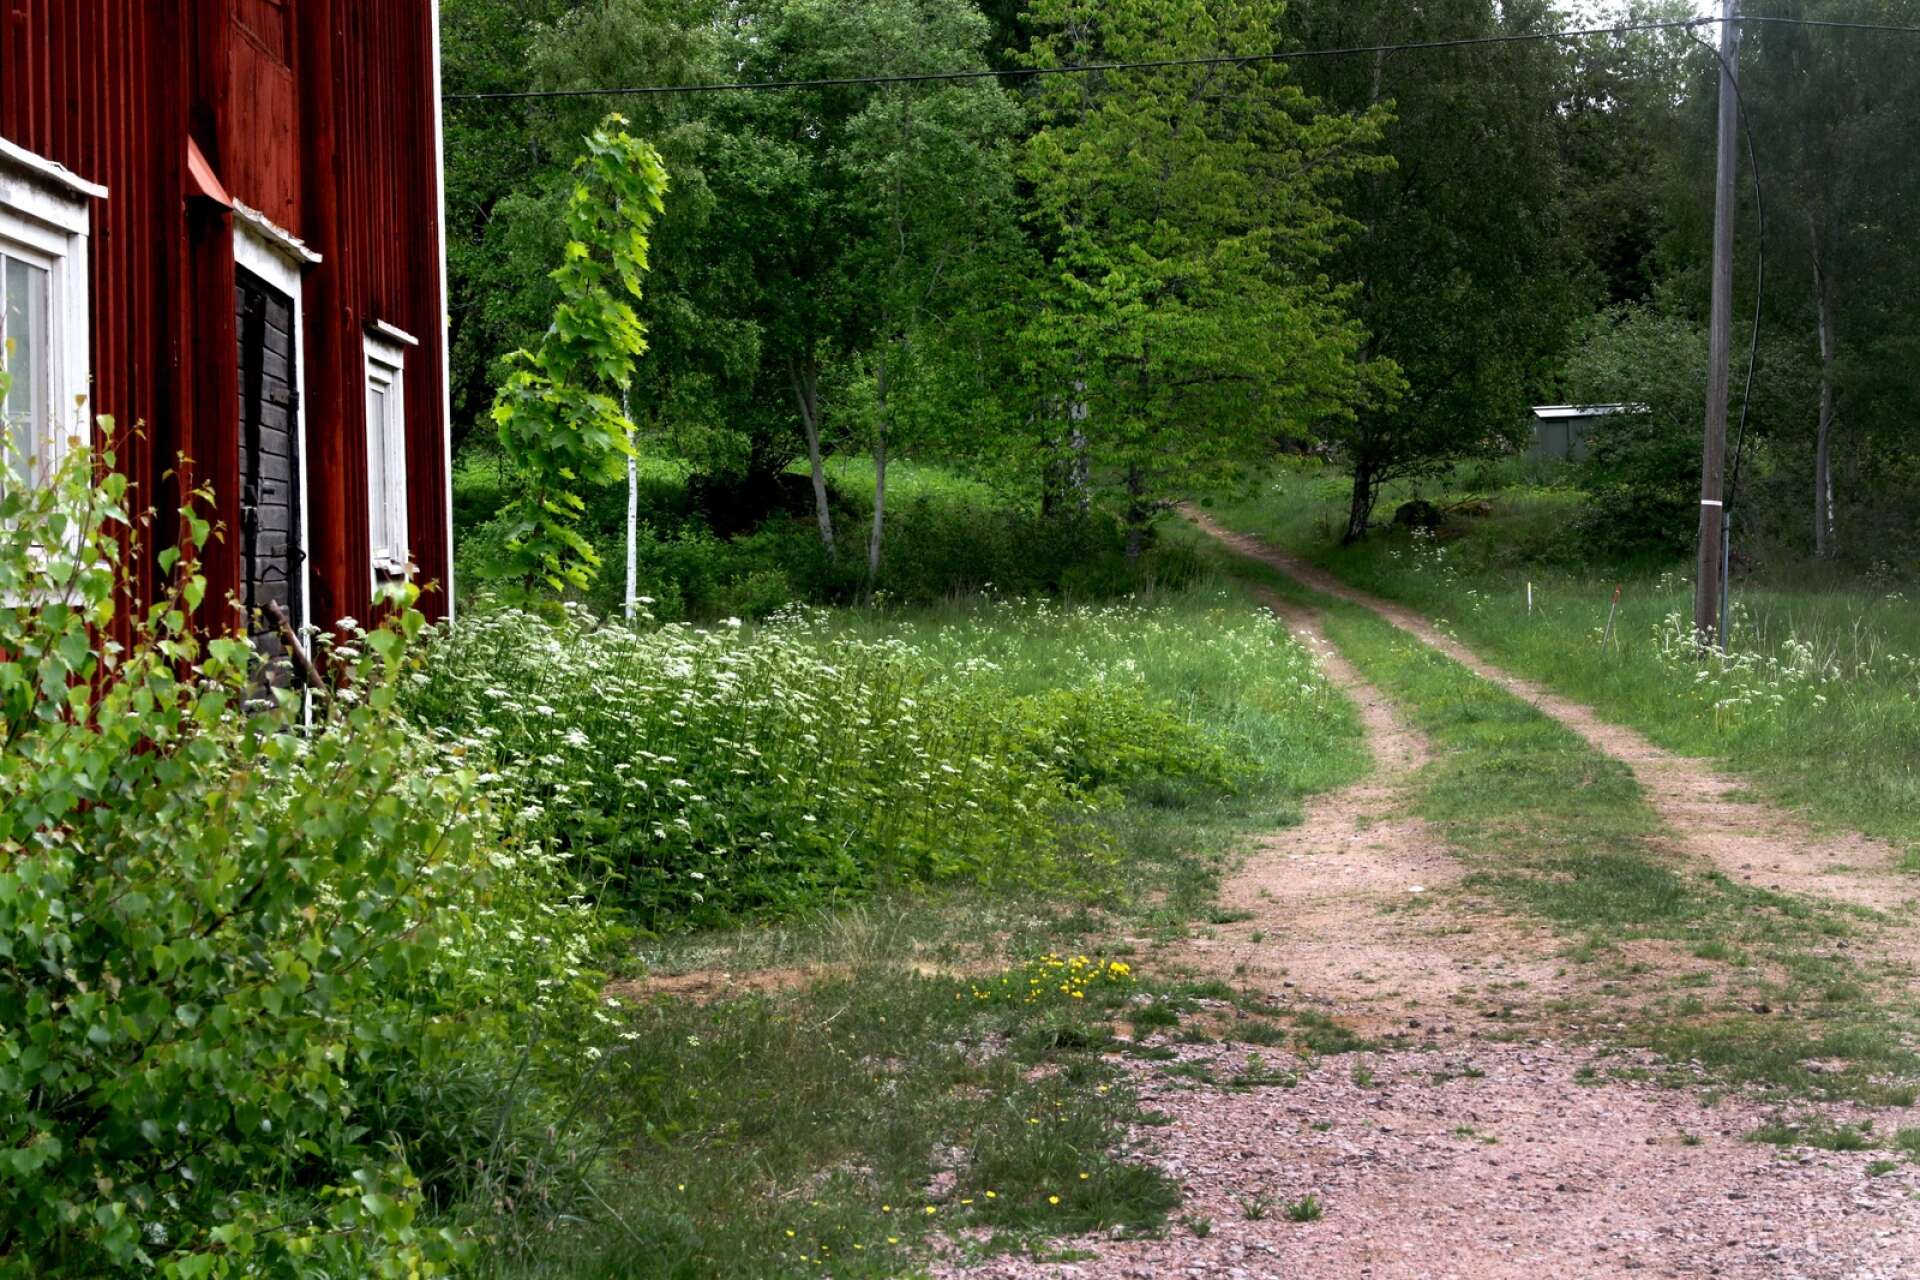 Vid ladugården går vägen som ledde till granngården Spirhult, som finns omnämnd i jordeboken redan 1636. Den gården är borta nu.